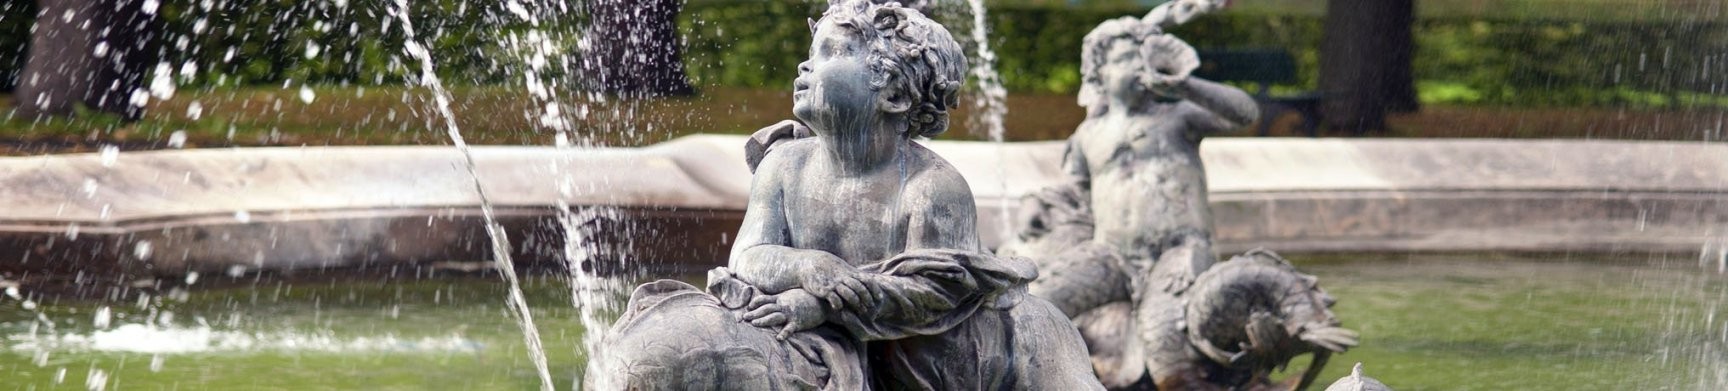 Wandbrunnen Versandkostenfrei Bestellen • Gartentraum von Wandbrunnen Garten Stein Bild